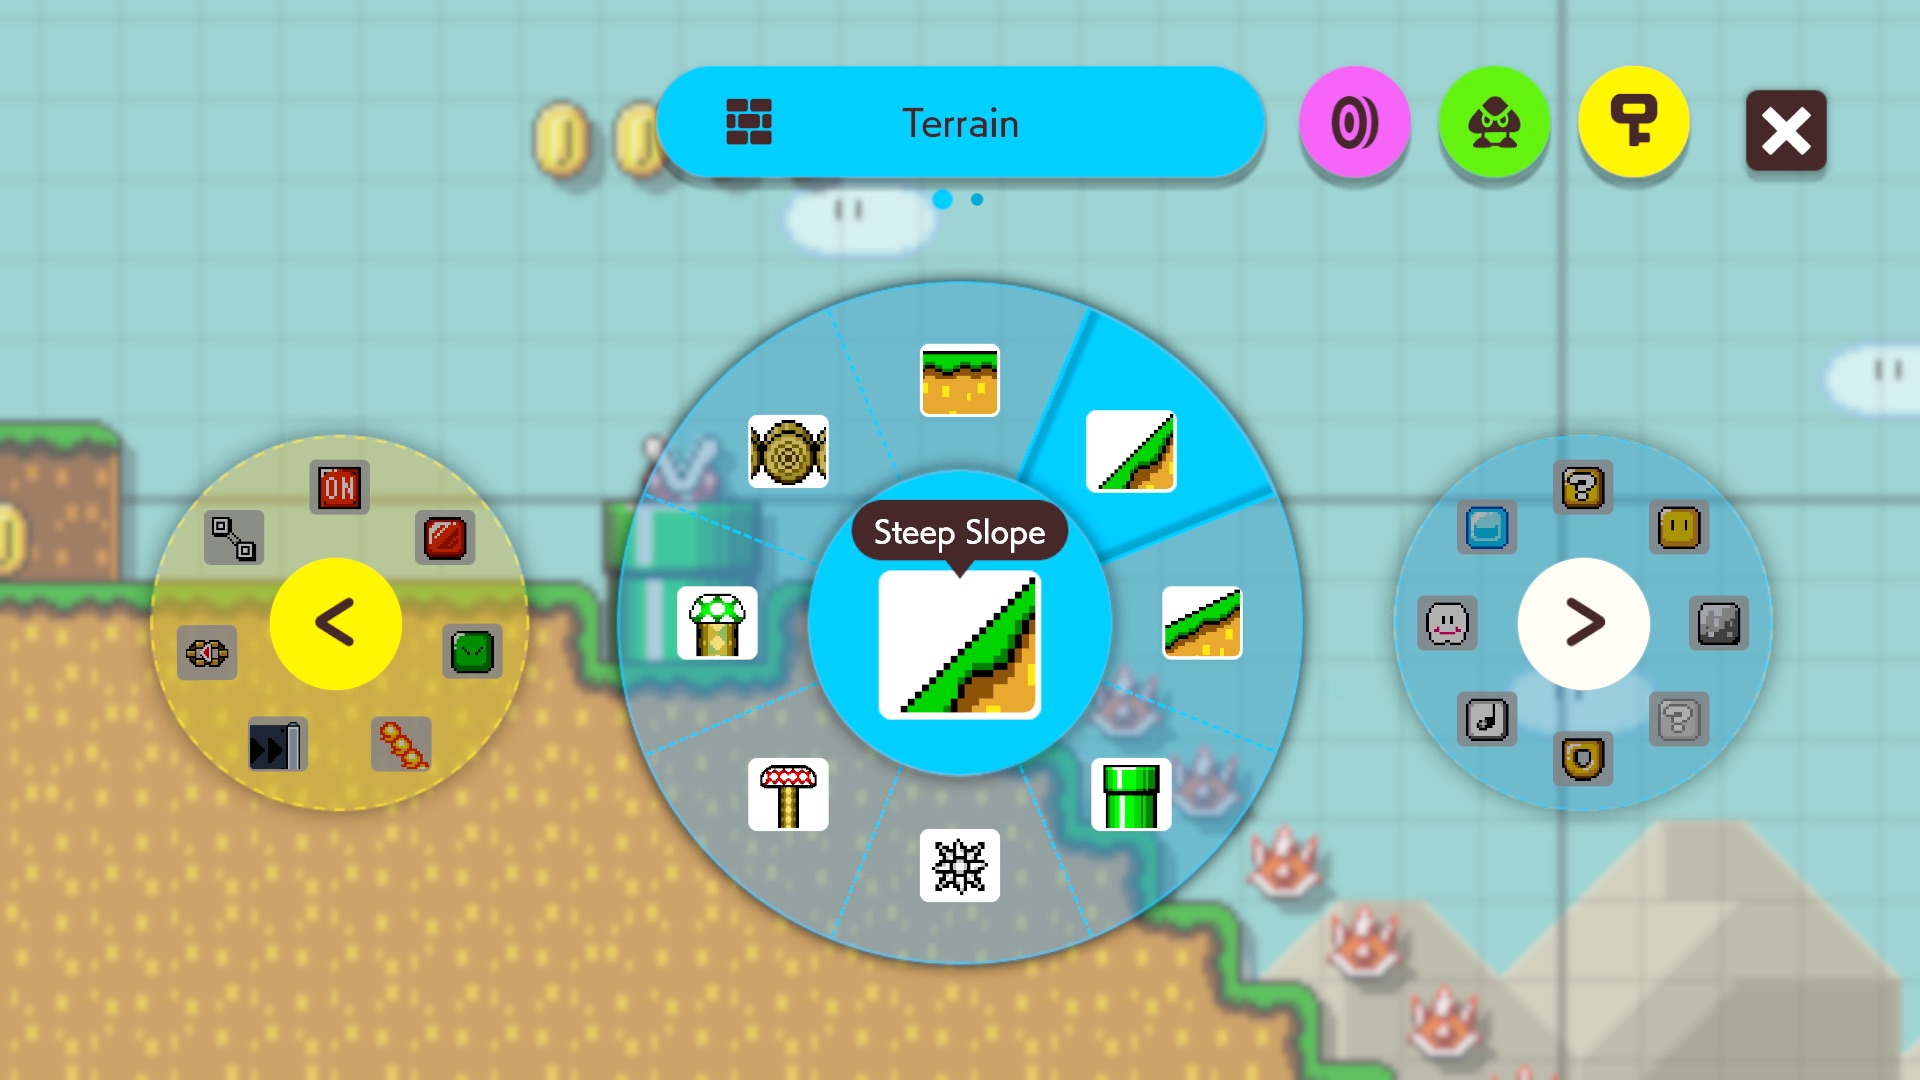 Super Mario Maker 2 Screenshot 1